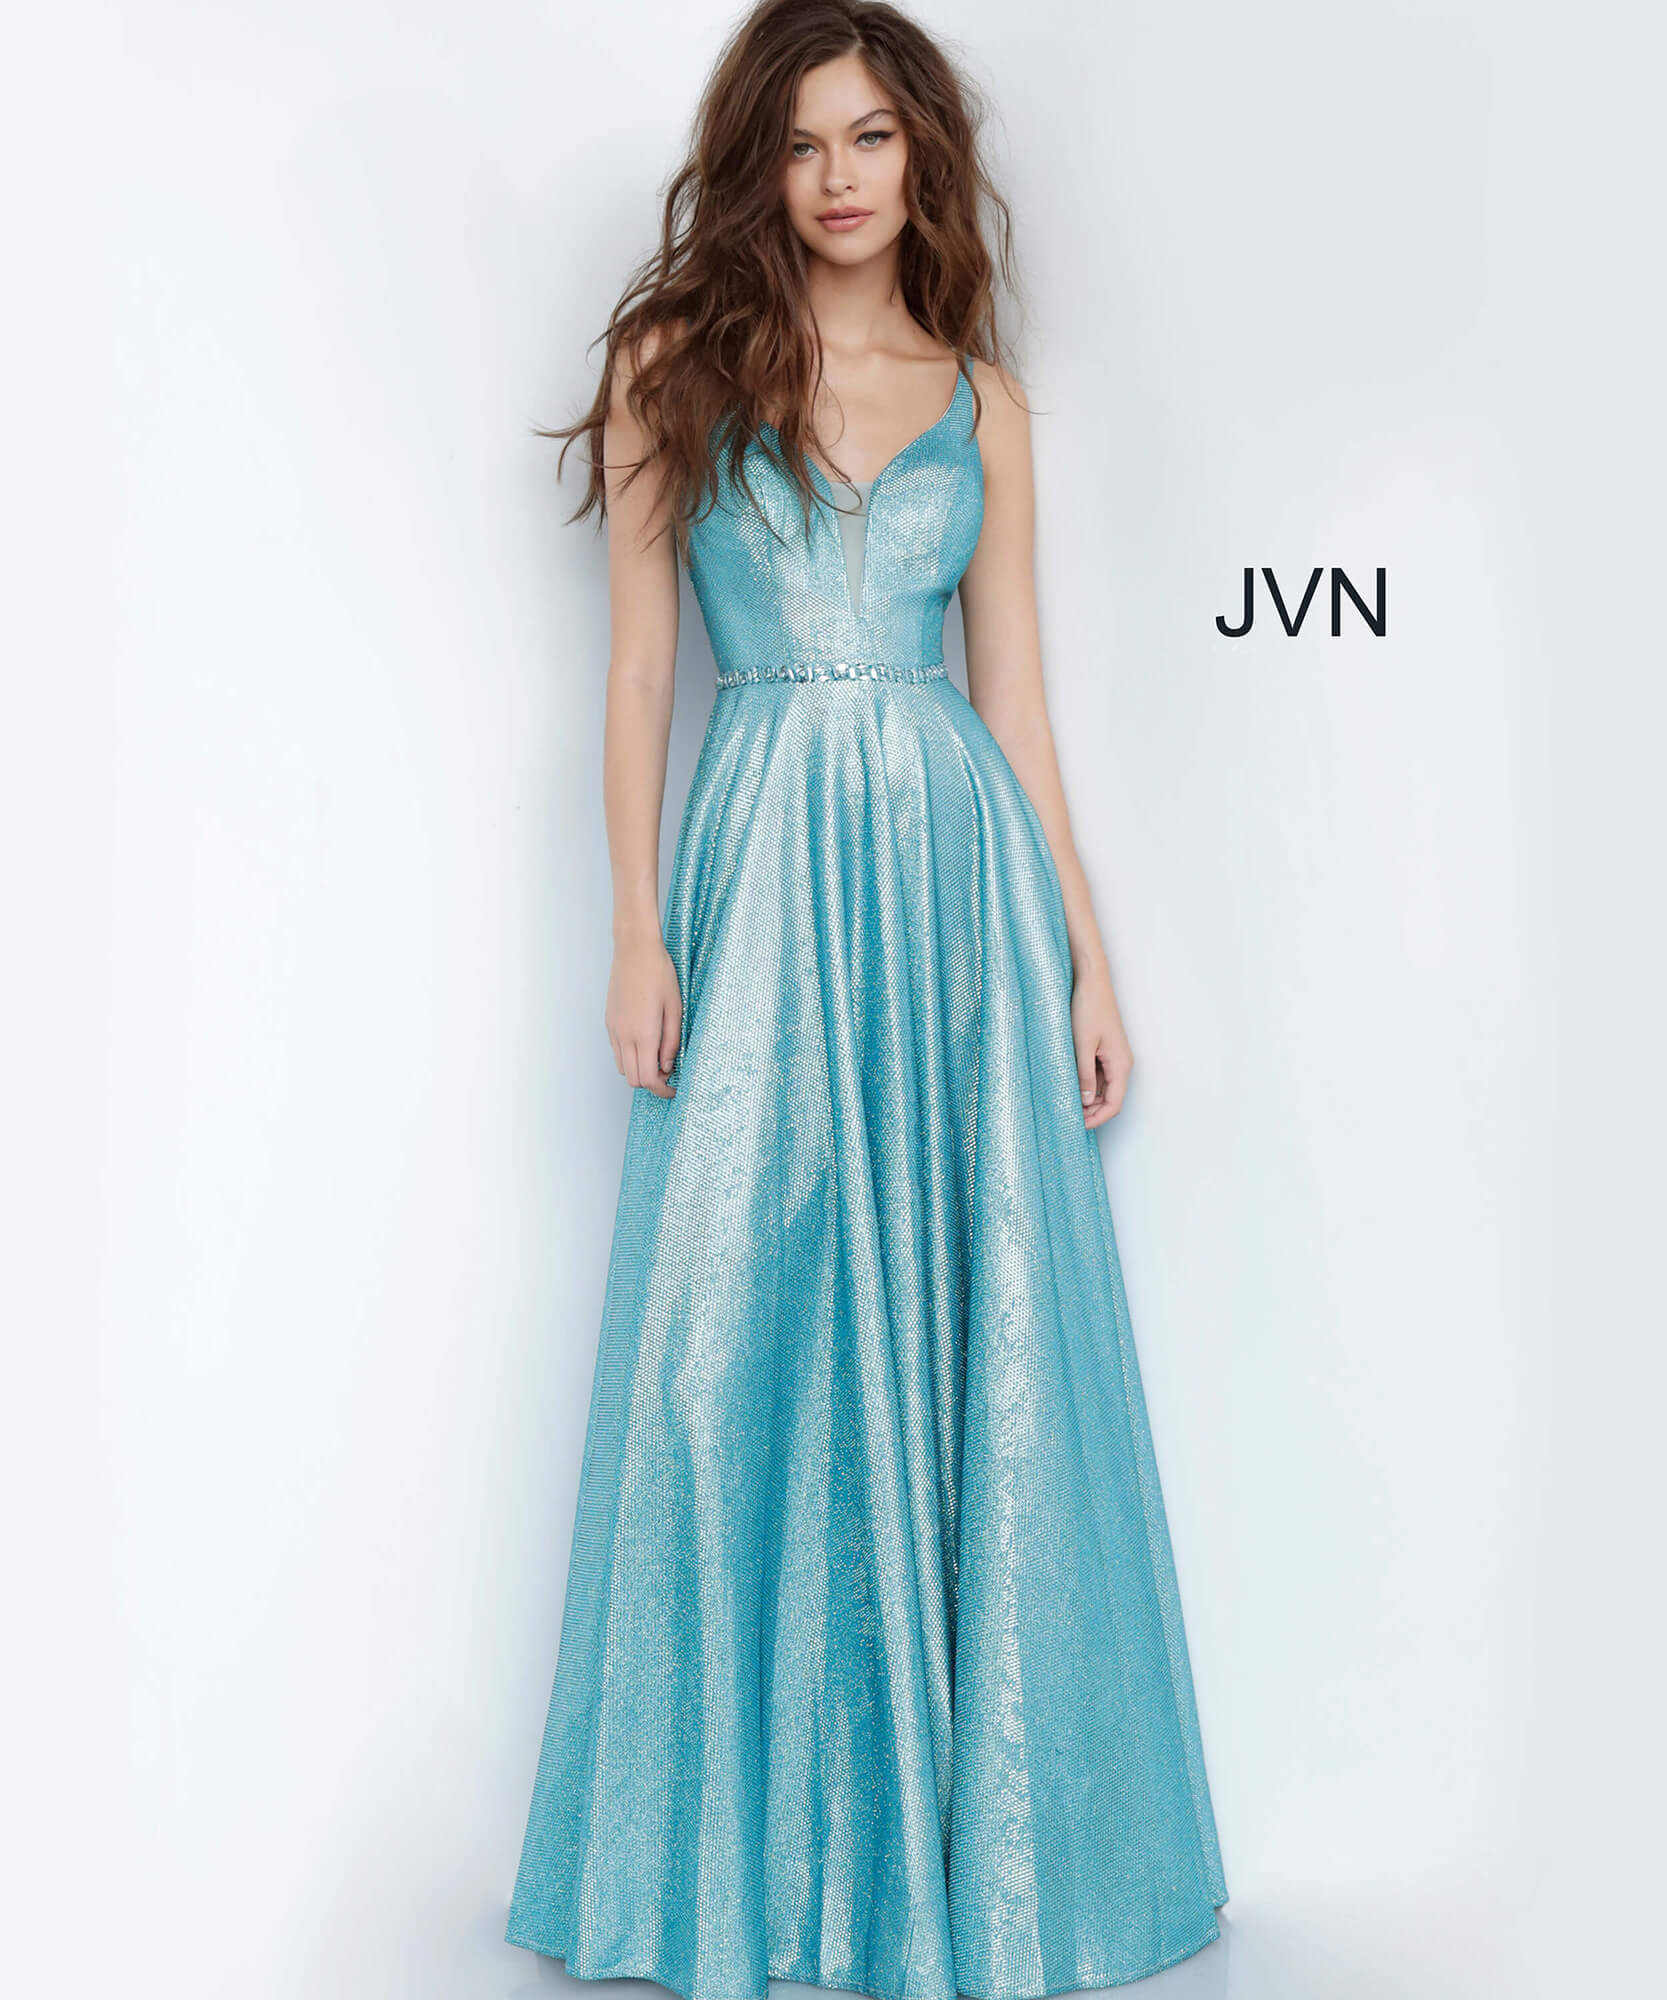 JVN67050 Dress | Metallic Silver Plunging Neck Embellished Belt Prom Dress